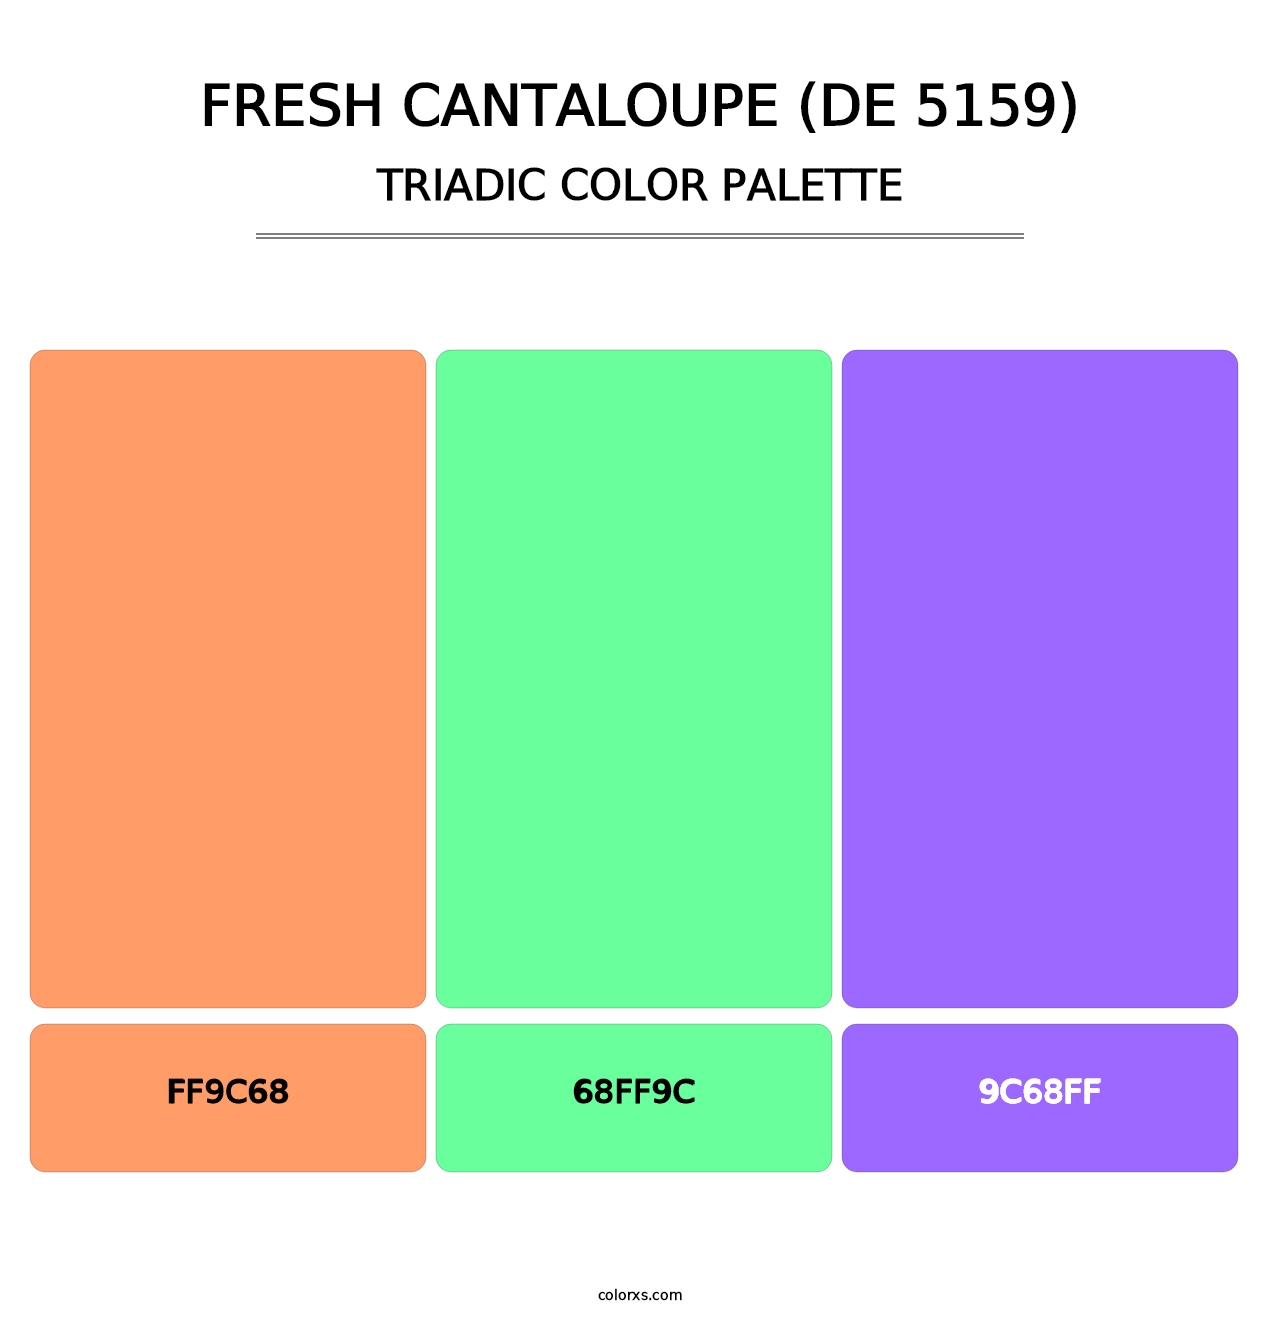 Fresh Cantaloupe (DE 5159) - Triadic Color Palette